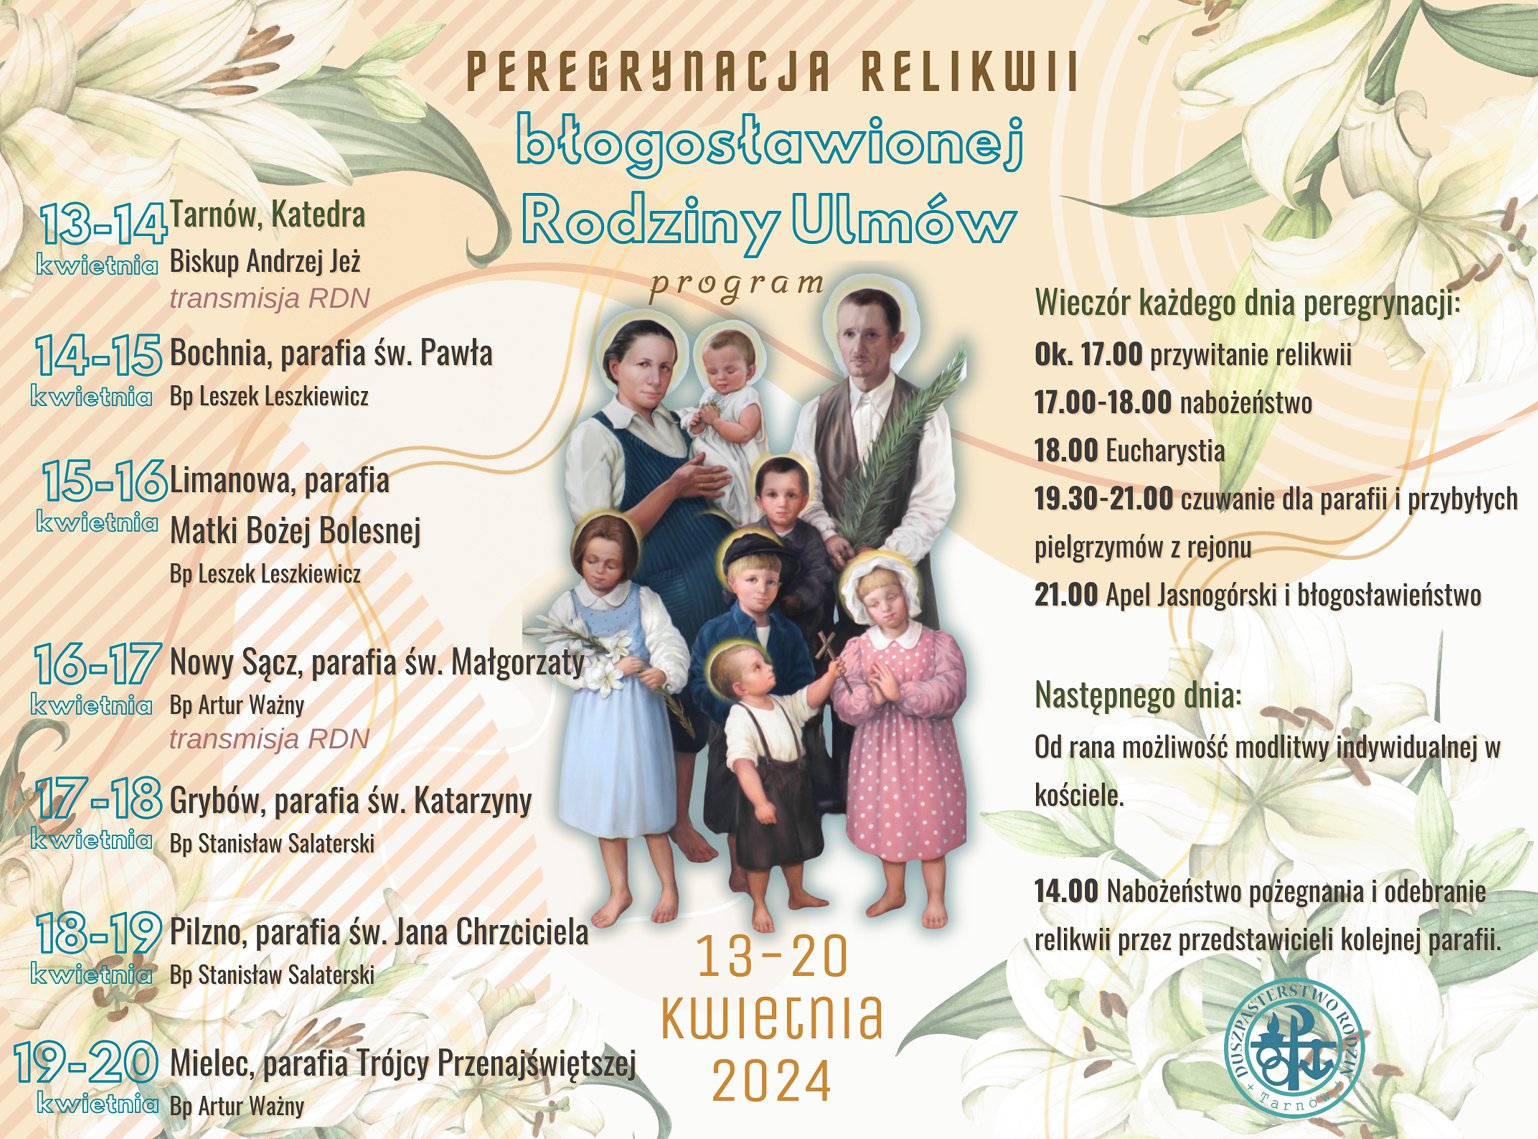 Program prergrynacji relikwii Bł. Rodziny Ulmów